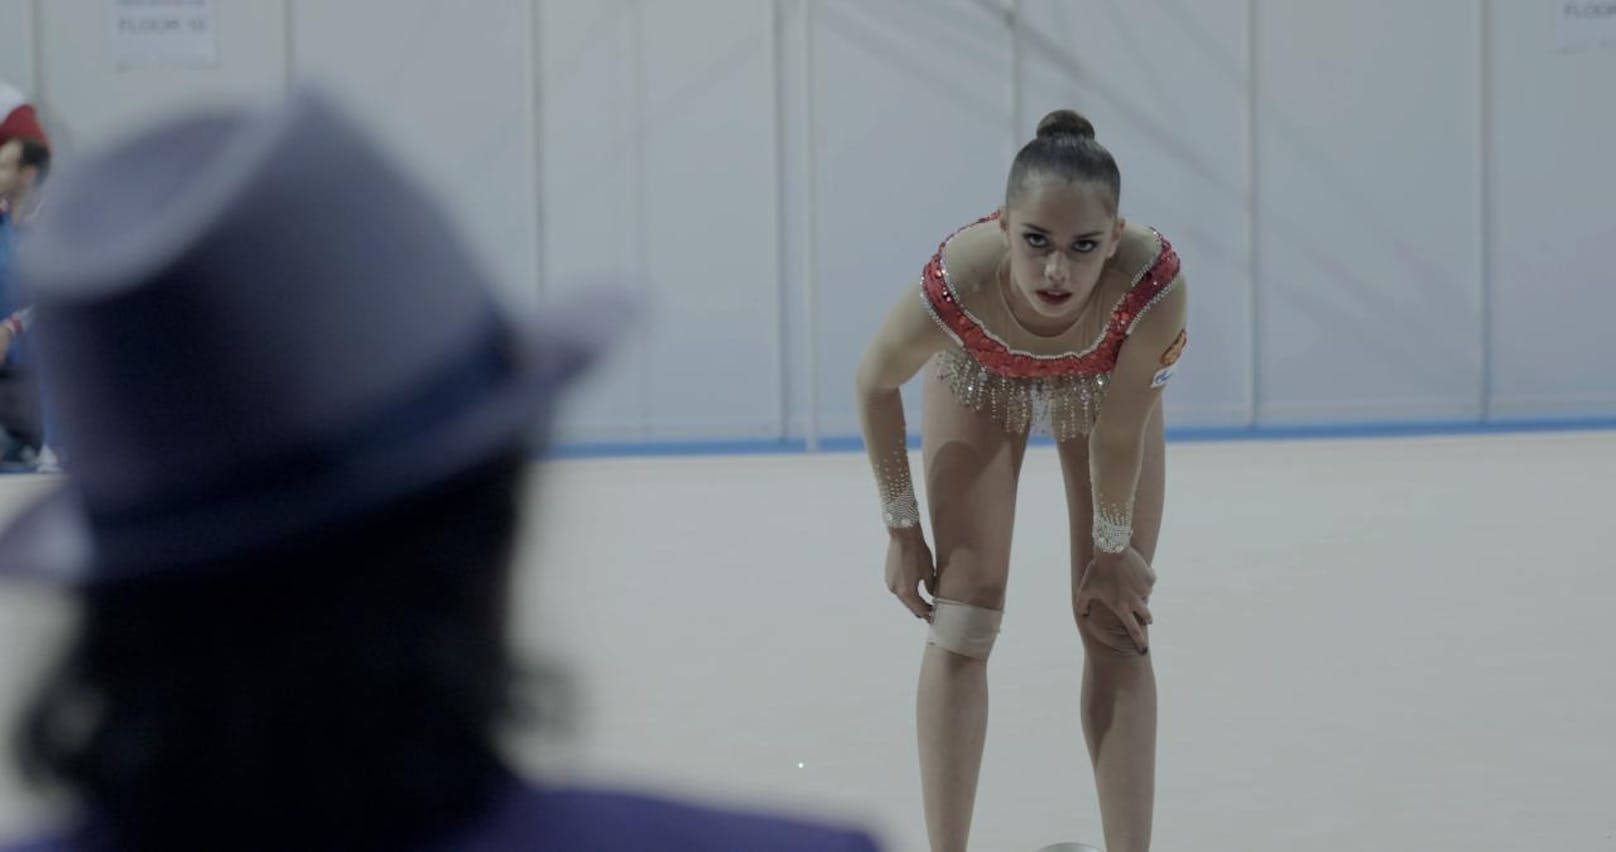 "Over the limit" ist ein Porträt der jungen polnischen Dokumentarfilmerin Marta Prus über Margarita Mamun. Du bist kein Mensch, du bist eine Athletin, teilt eine Trainerin der russischen Spitzensportlerin mit, die sich in der Rhythmischen Gymnastik auf Olympia 2016 vorbereitet. Das brutale russische Trainingssystem kennt keine Limits.